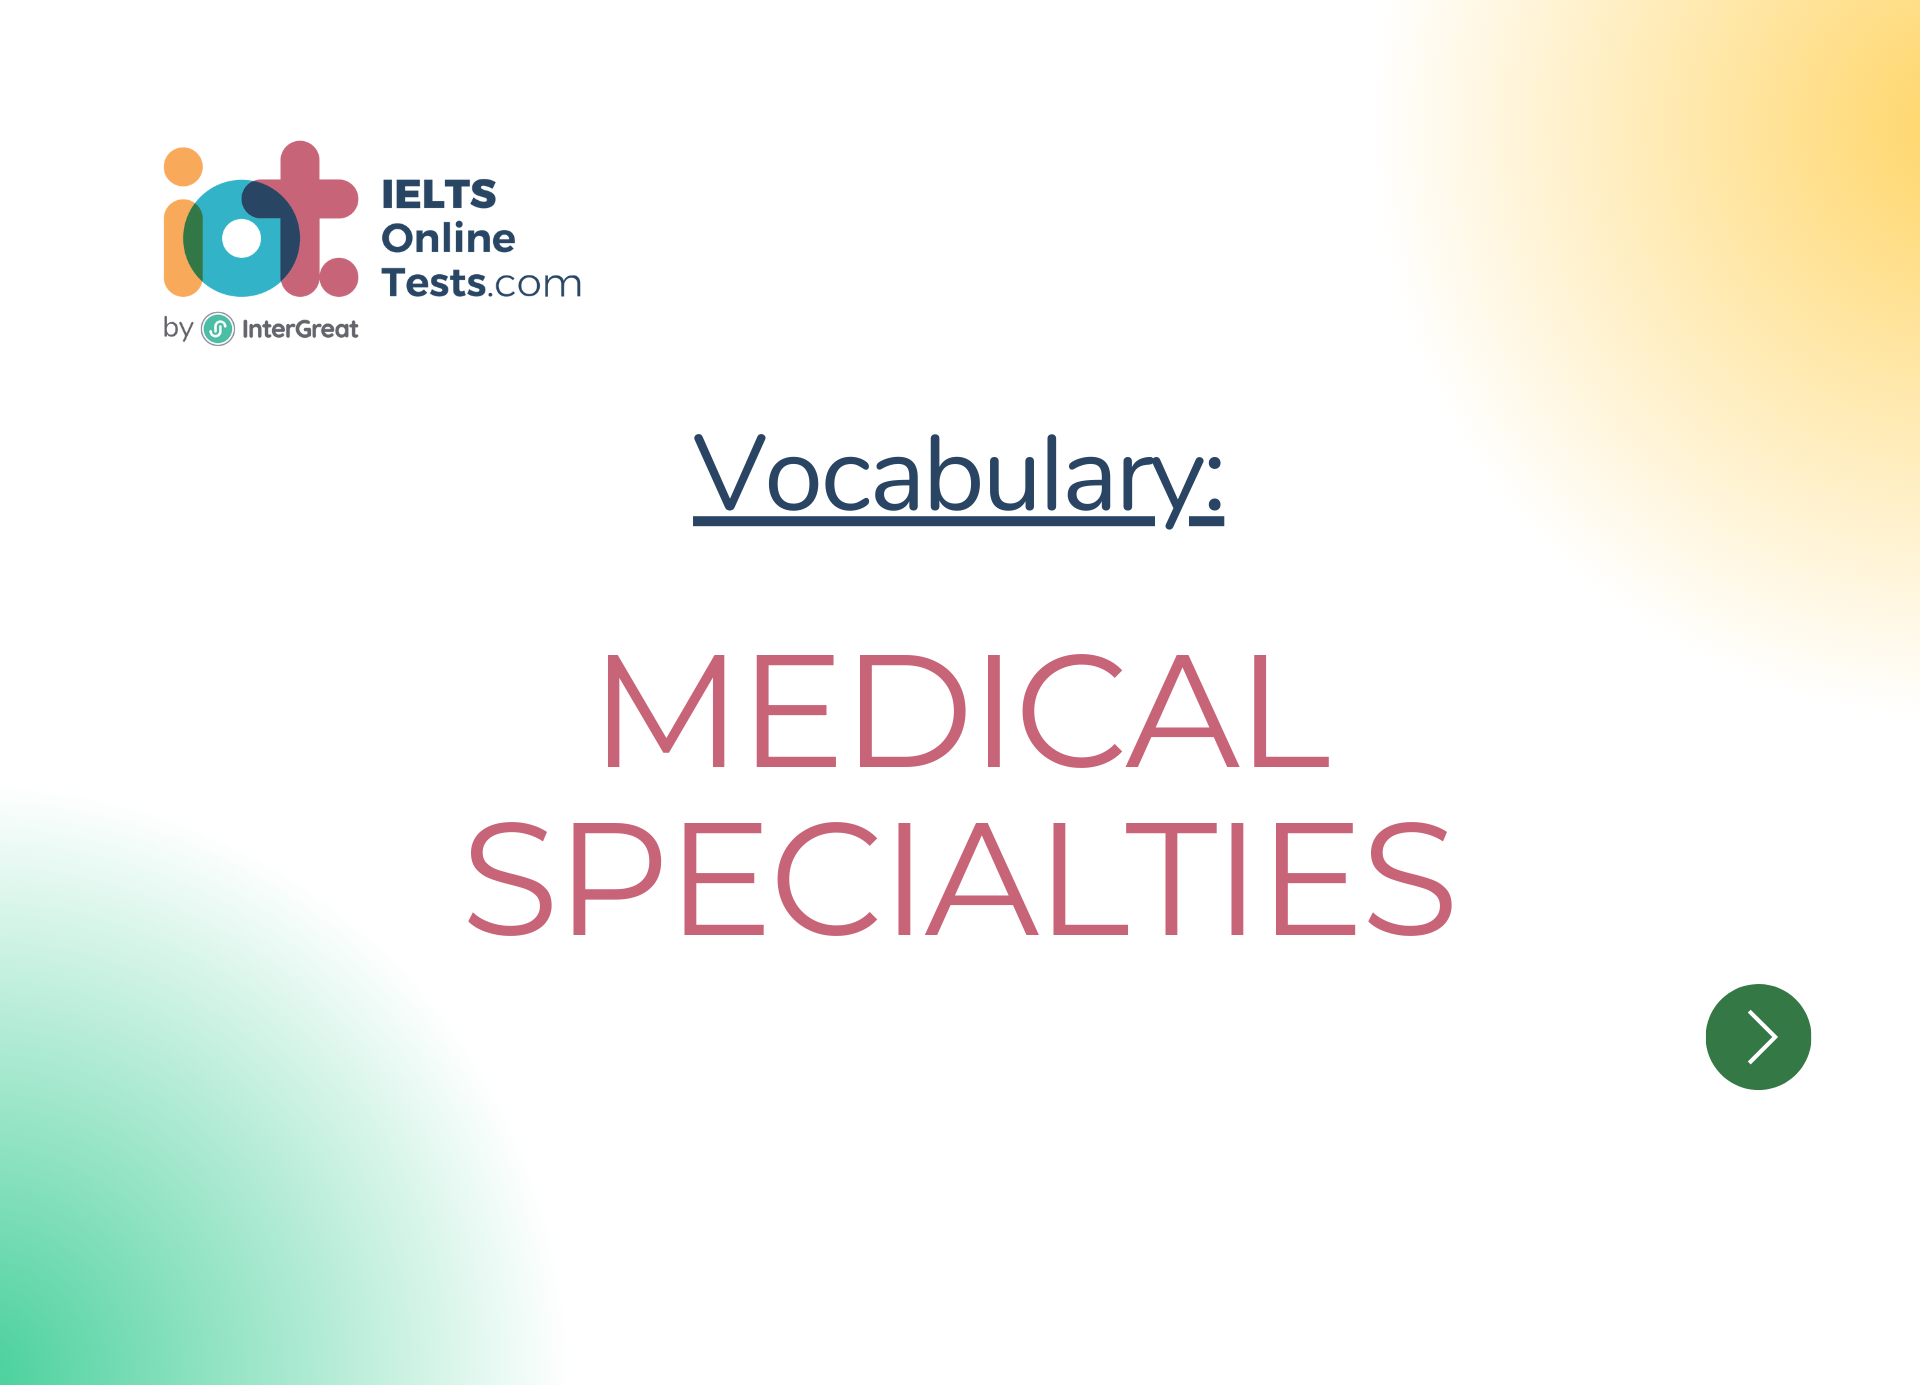 Chuyên khoa y học (Medical specialties)